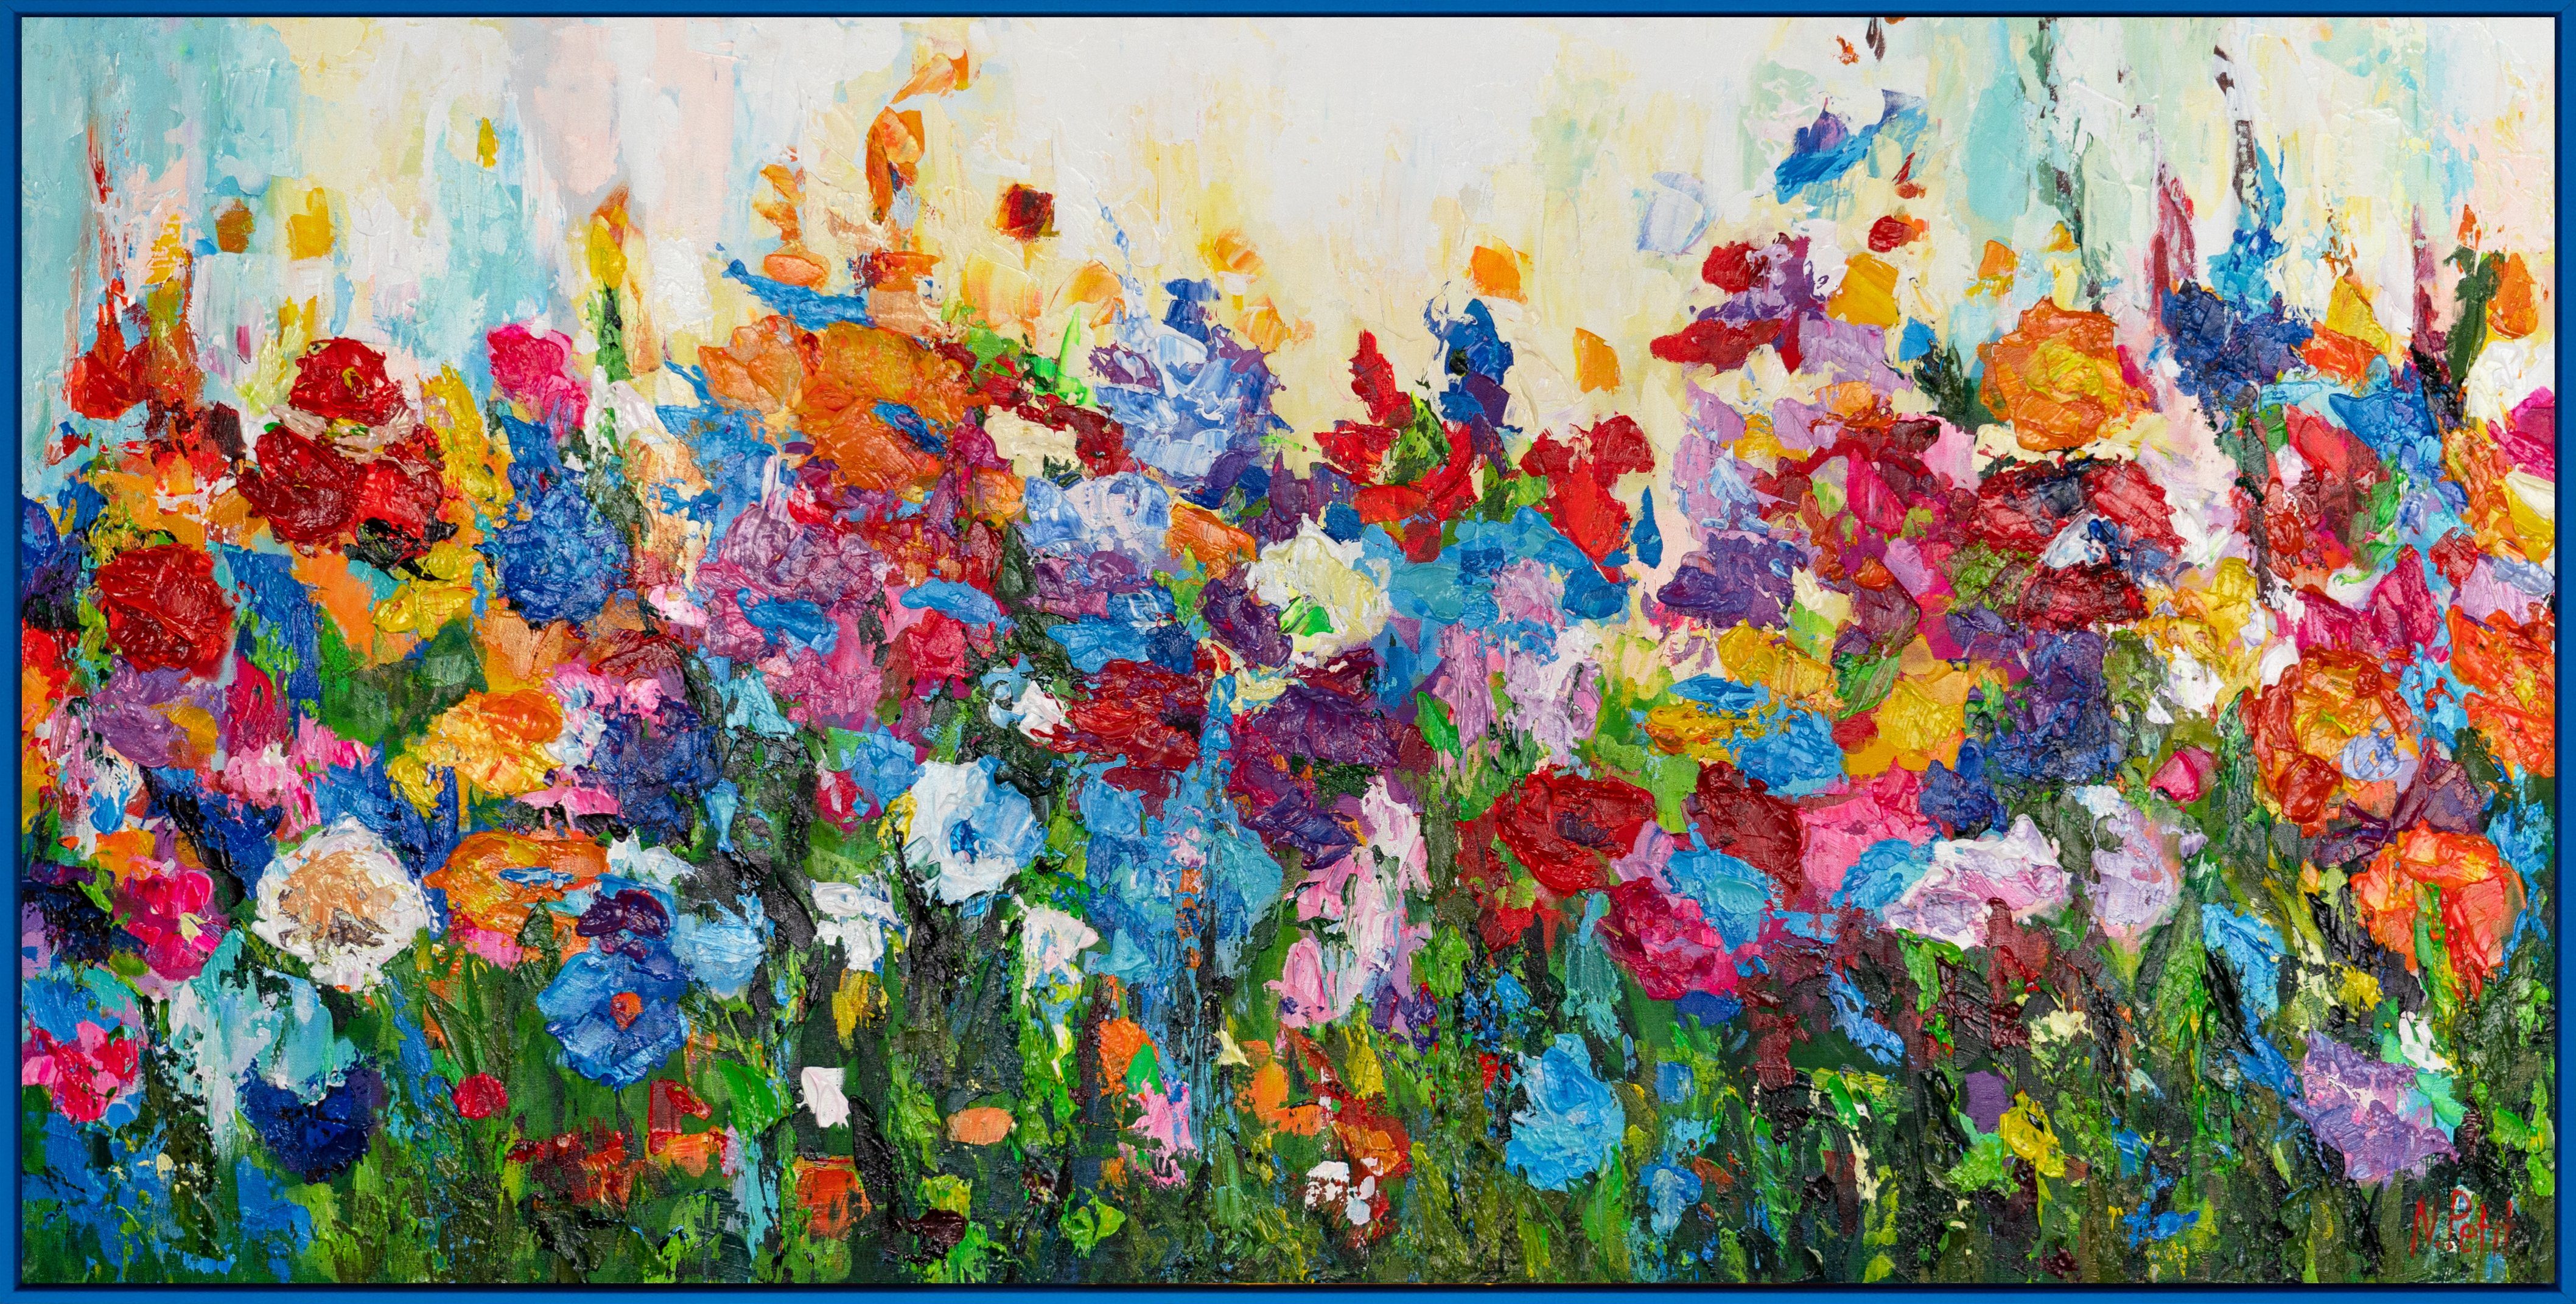 YS-Art Gemälde Blumige Farben, Blumen Mit Rahmen in Blau